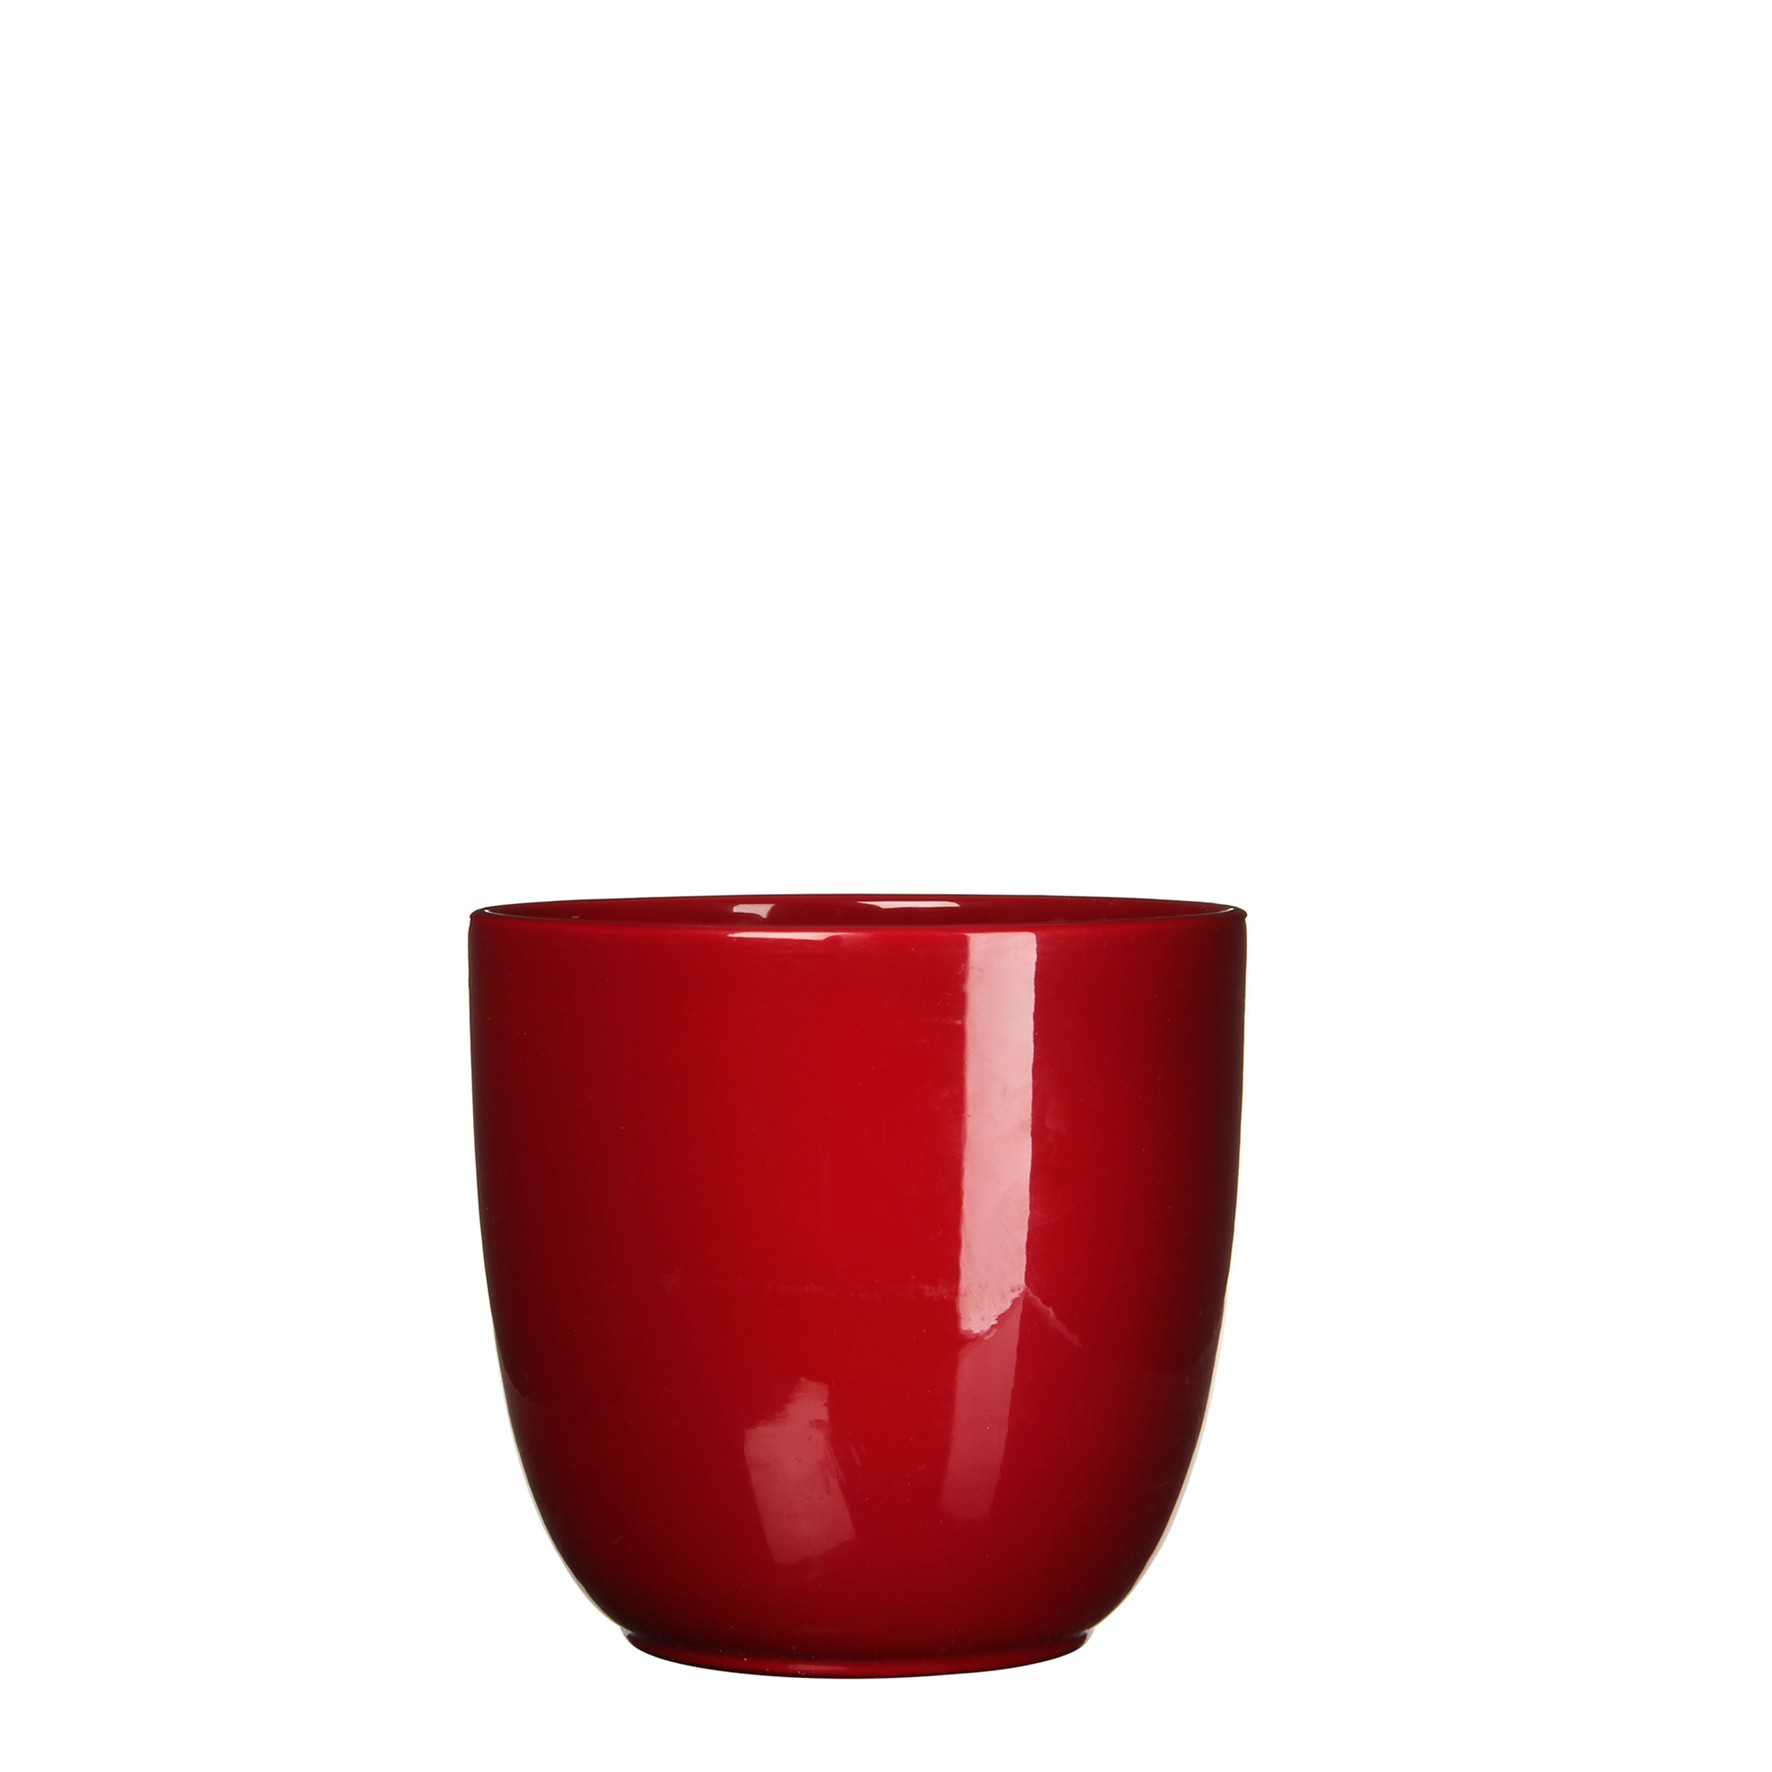 Bloempot Pot rond es/15 tusca 16 x 17 cm d.rood Mica - Mica Decorations